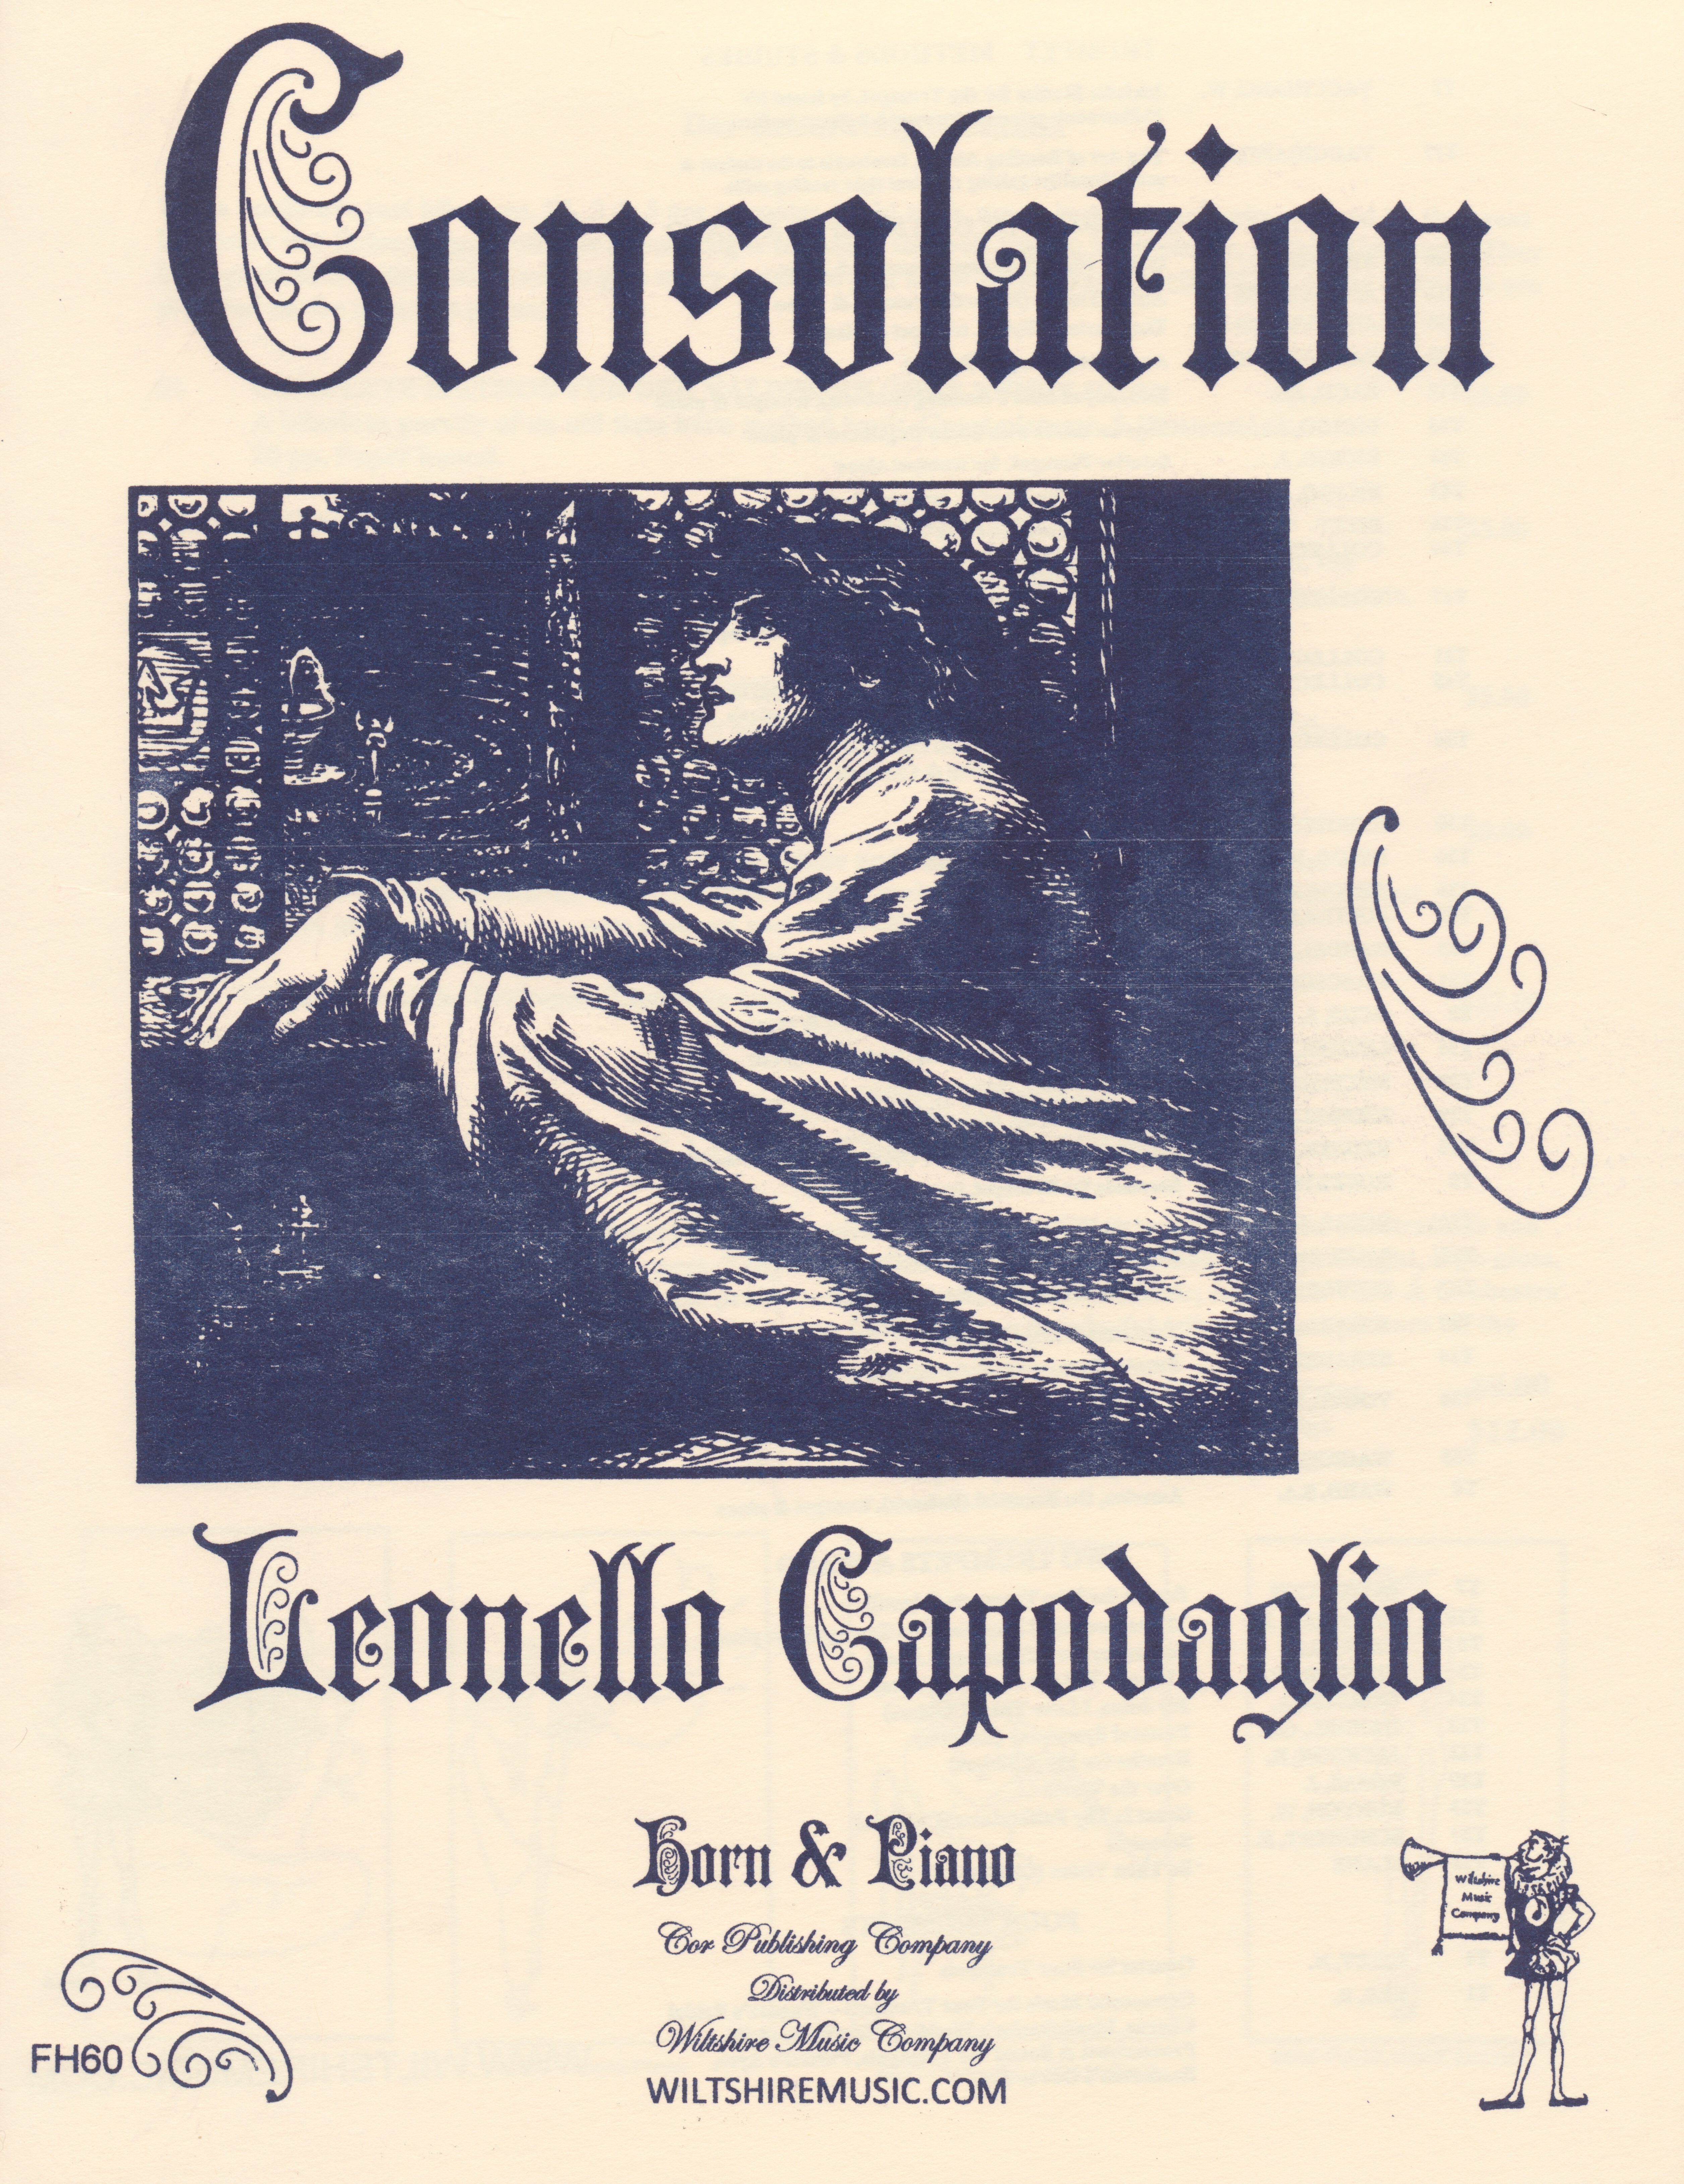 Consolation, Leonello Capodaglio, horn & piano